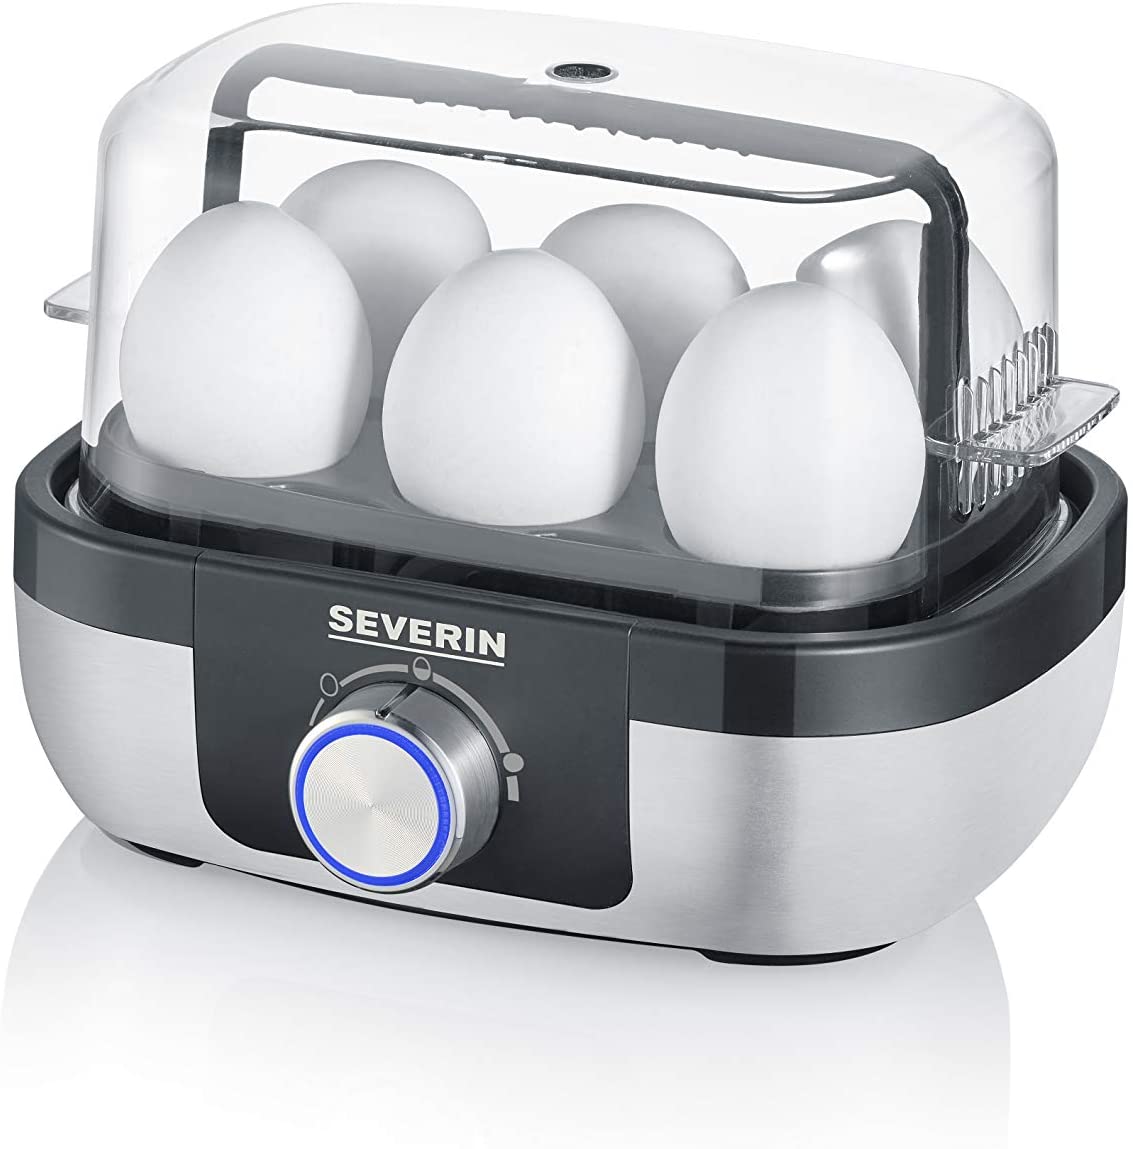 Severin Italia Ek 3167 Egg Boiler With Timer Control